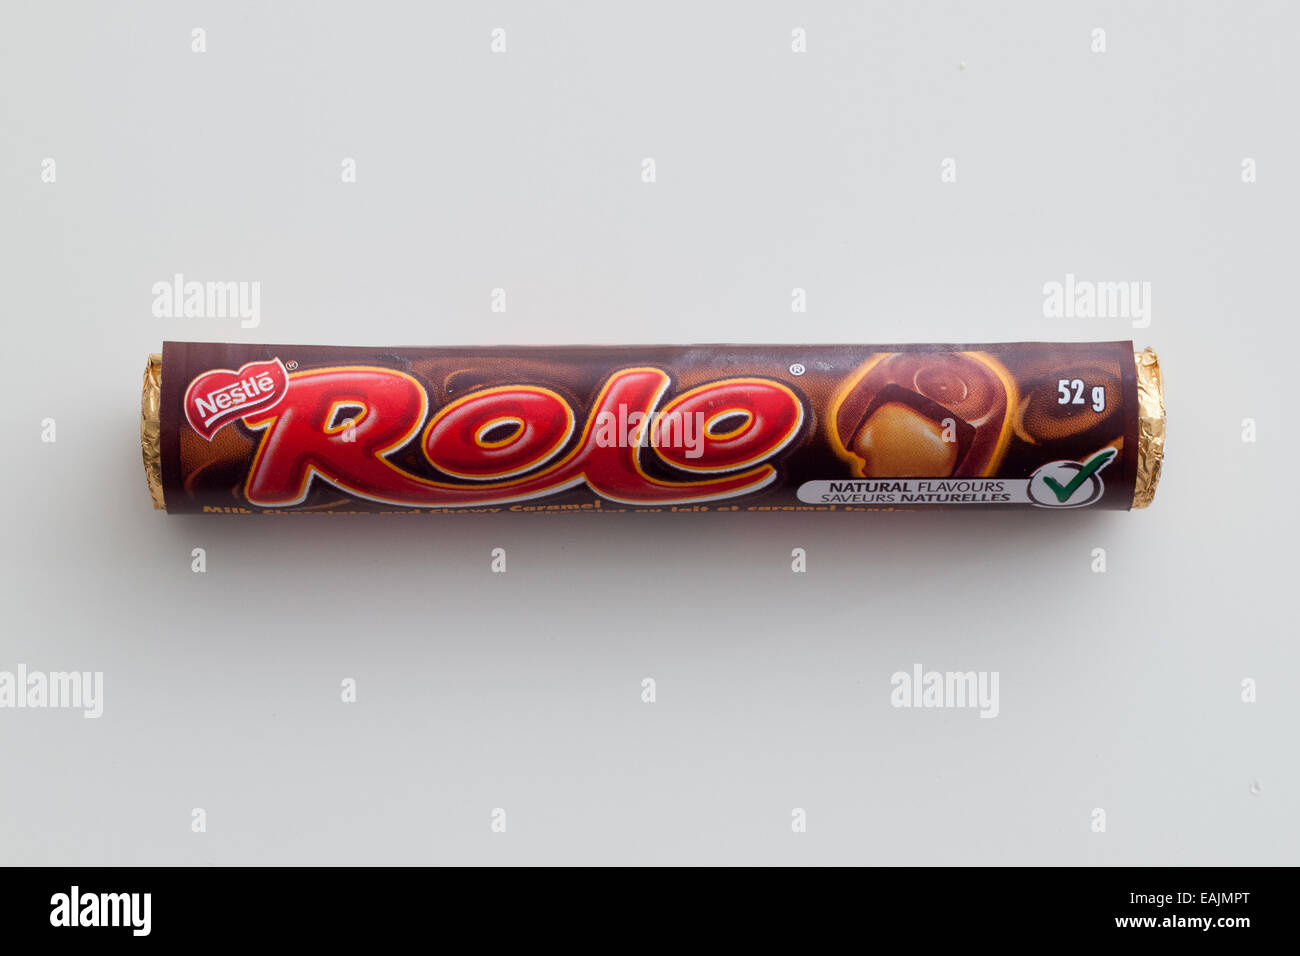 Tubi di Rolo candy, un prodotto dolciario da Nestlé, tranne che negli Stati Uniti dove è realizzato sotto licenza da parte di Hershey Company. Foto Stock